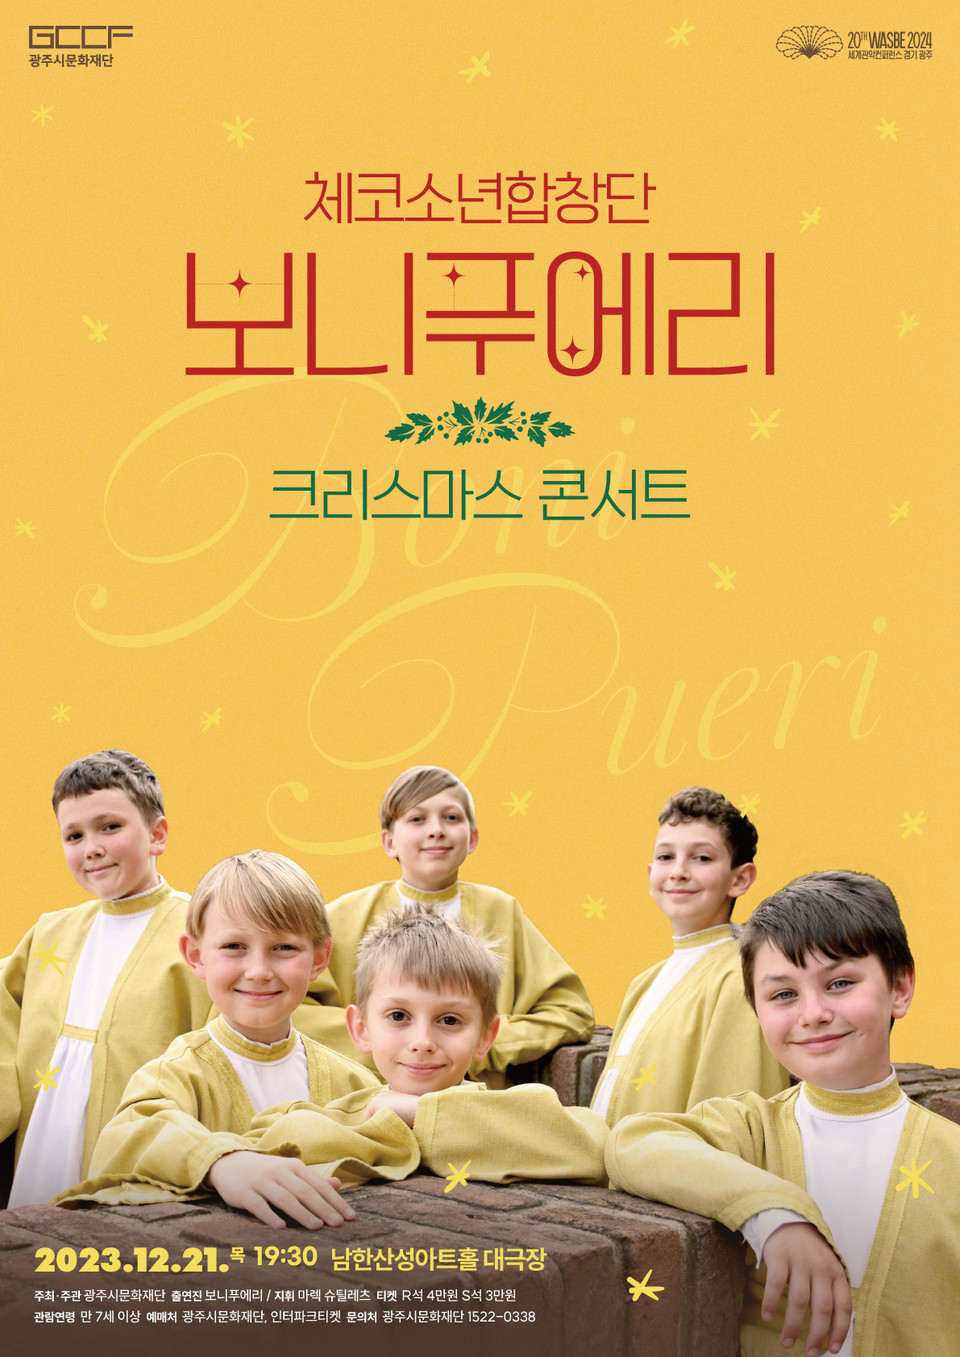 광주시문화재단은 오는 21일 남한산성아트홀 대극장에서 ‘체코소년합창단 보니푸에리 크리스마스 콘서트’를 개최한다. (사진제공=광주시문화재단)